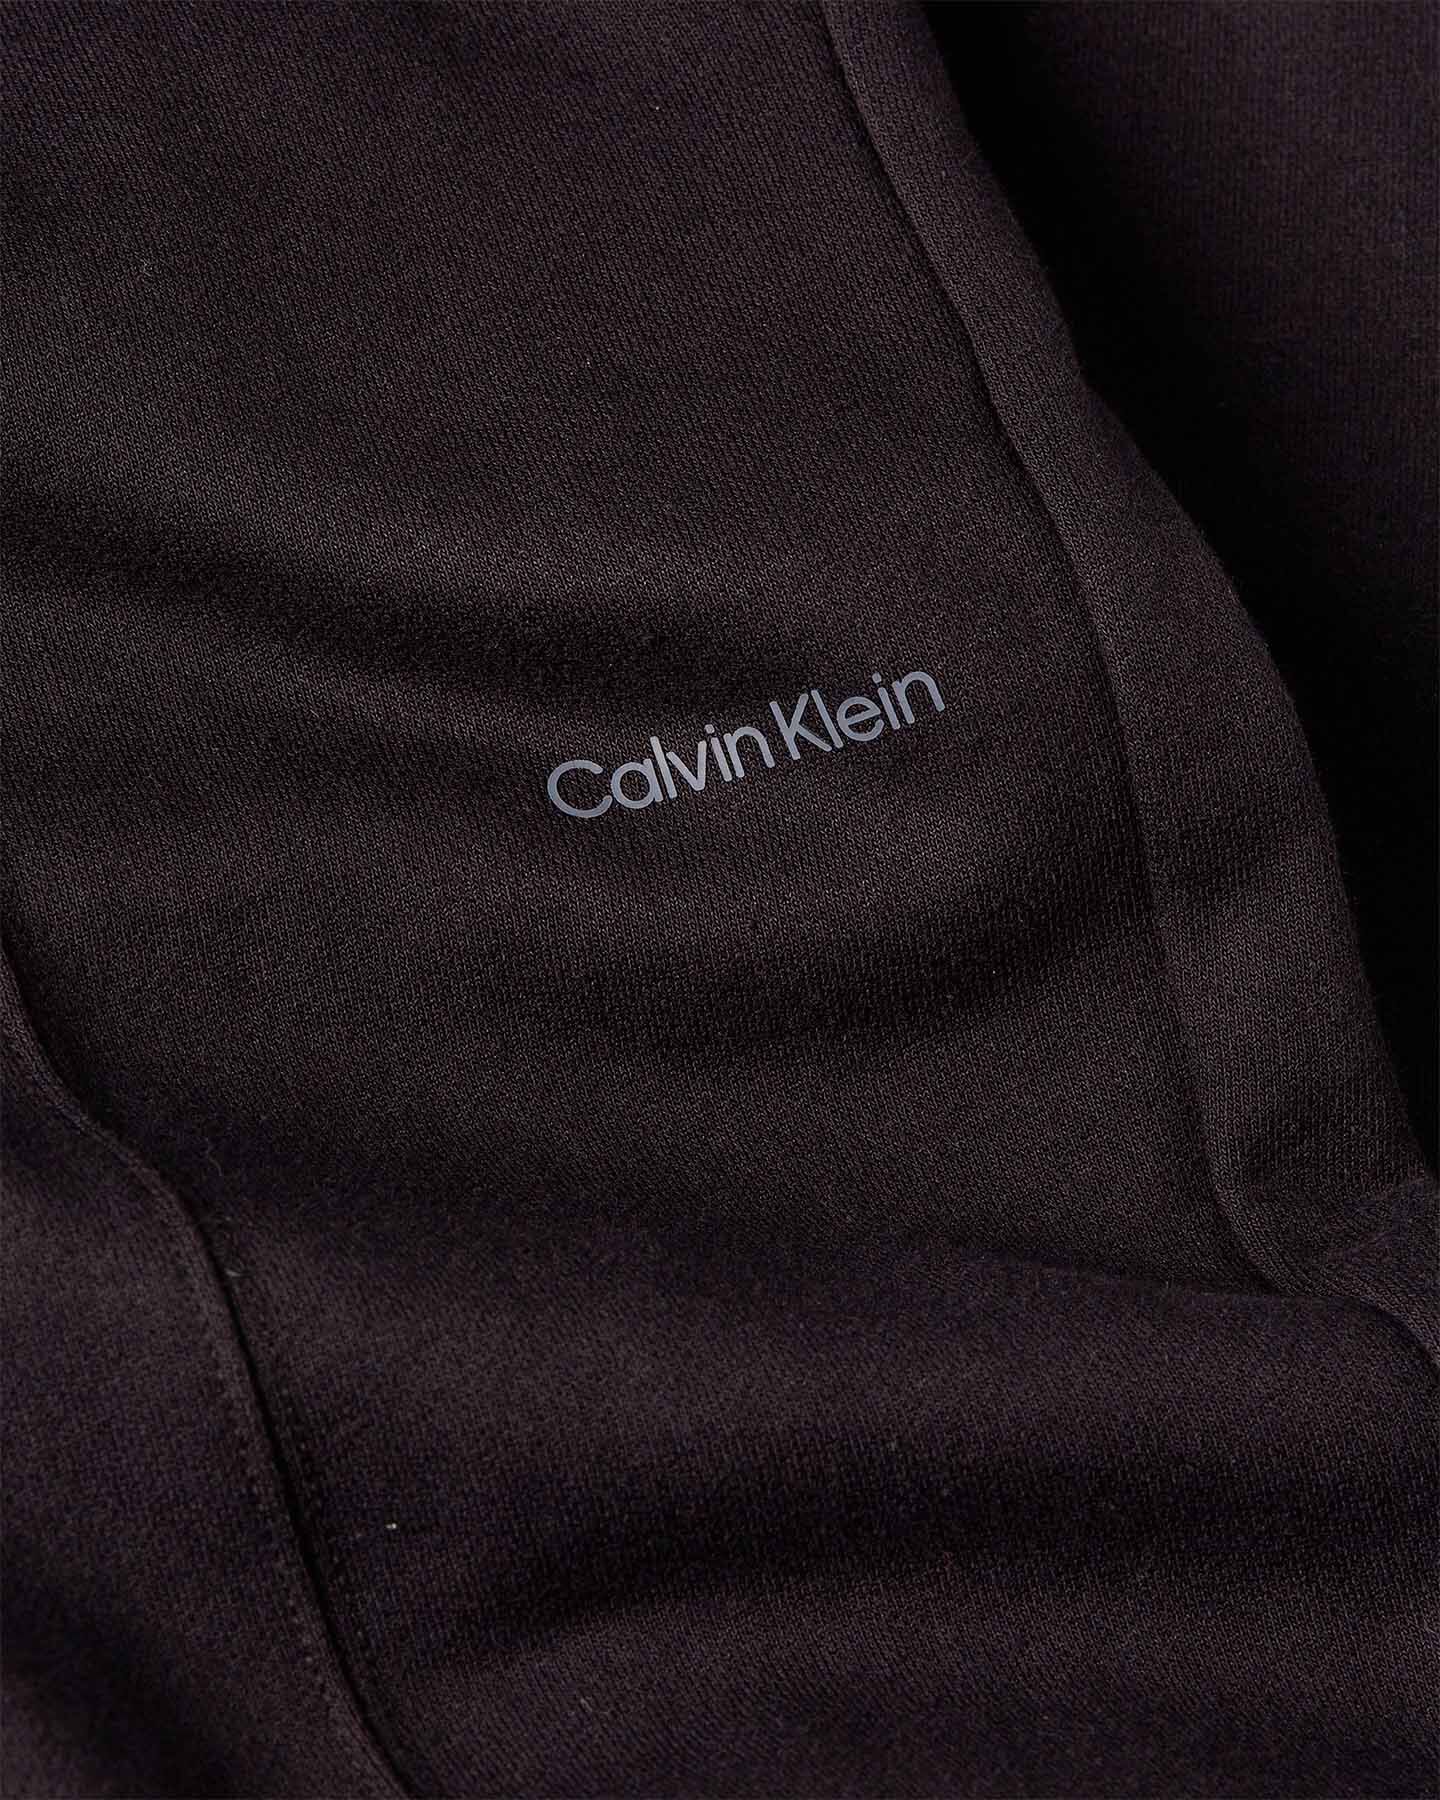  Pantalone CALVIN KLEIN SPORT CUFFS W S4120156|BAE|S scatto 2